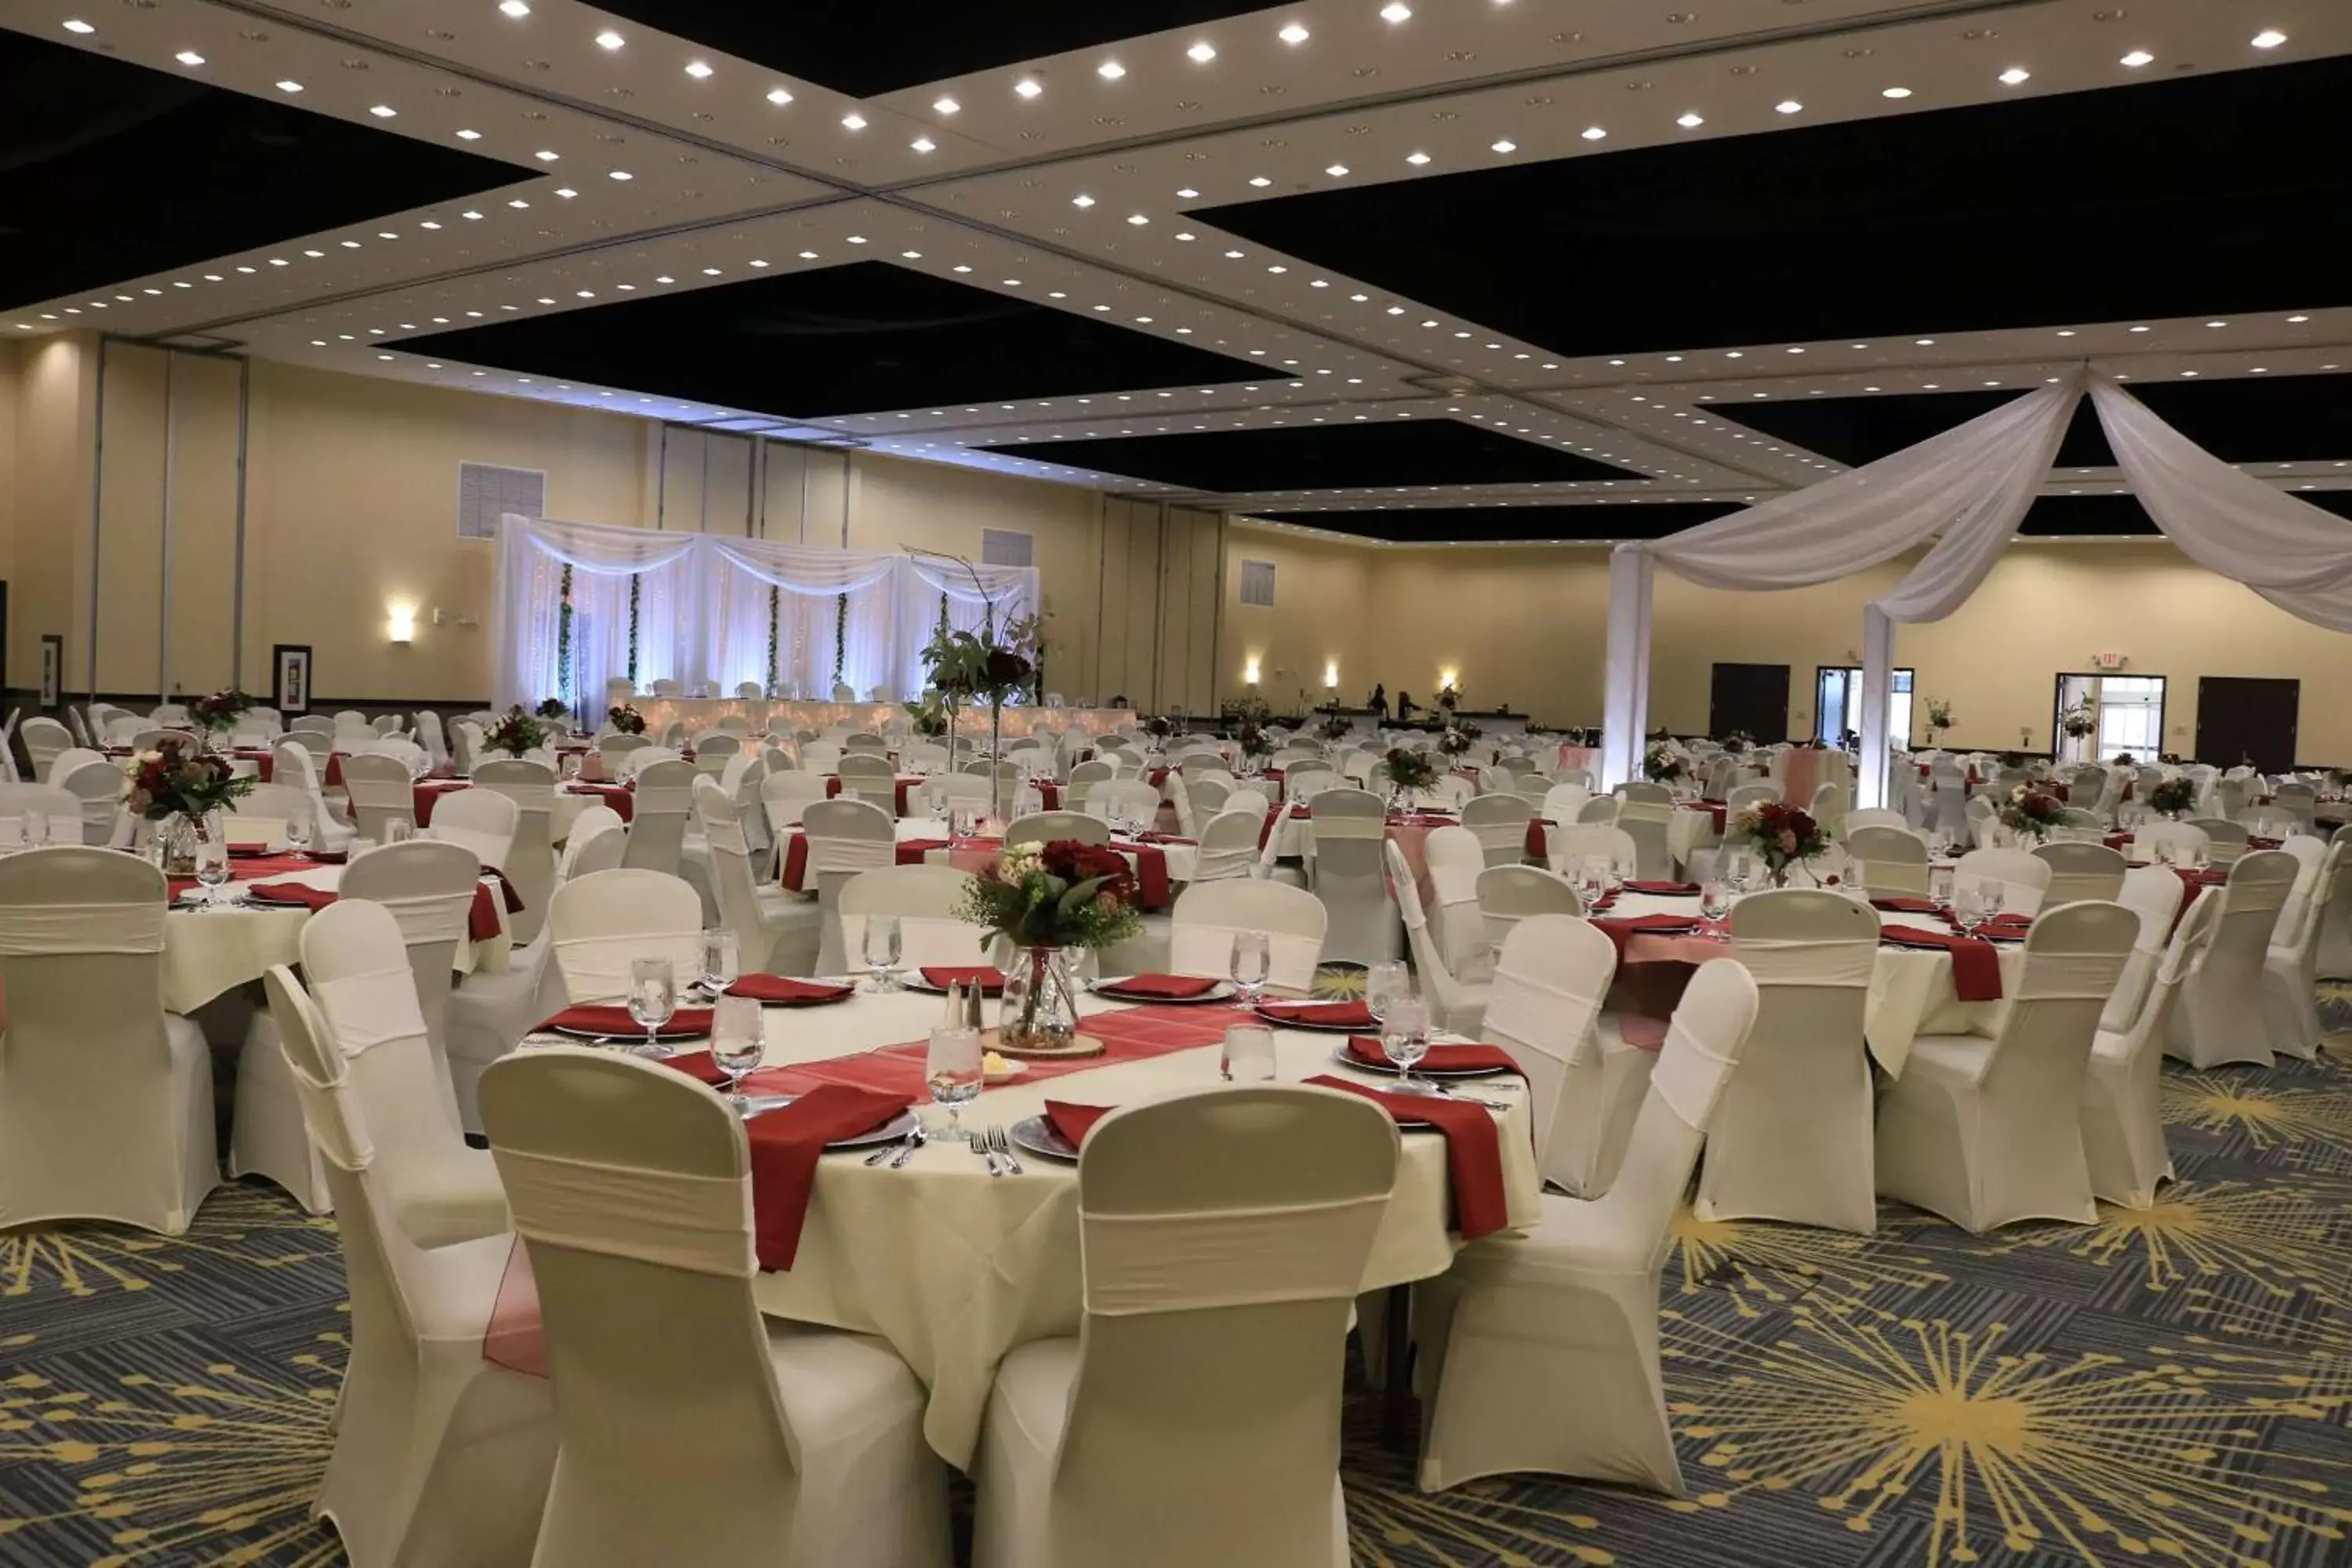 Meeting/conference room, Banquet Facilities in Hilton Garden Inn Fargo